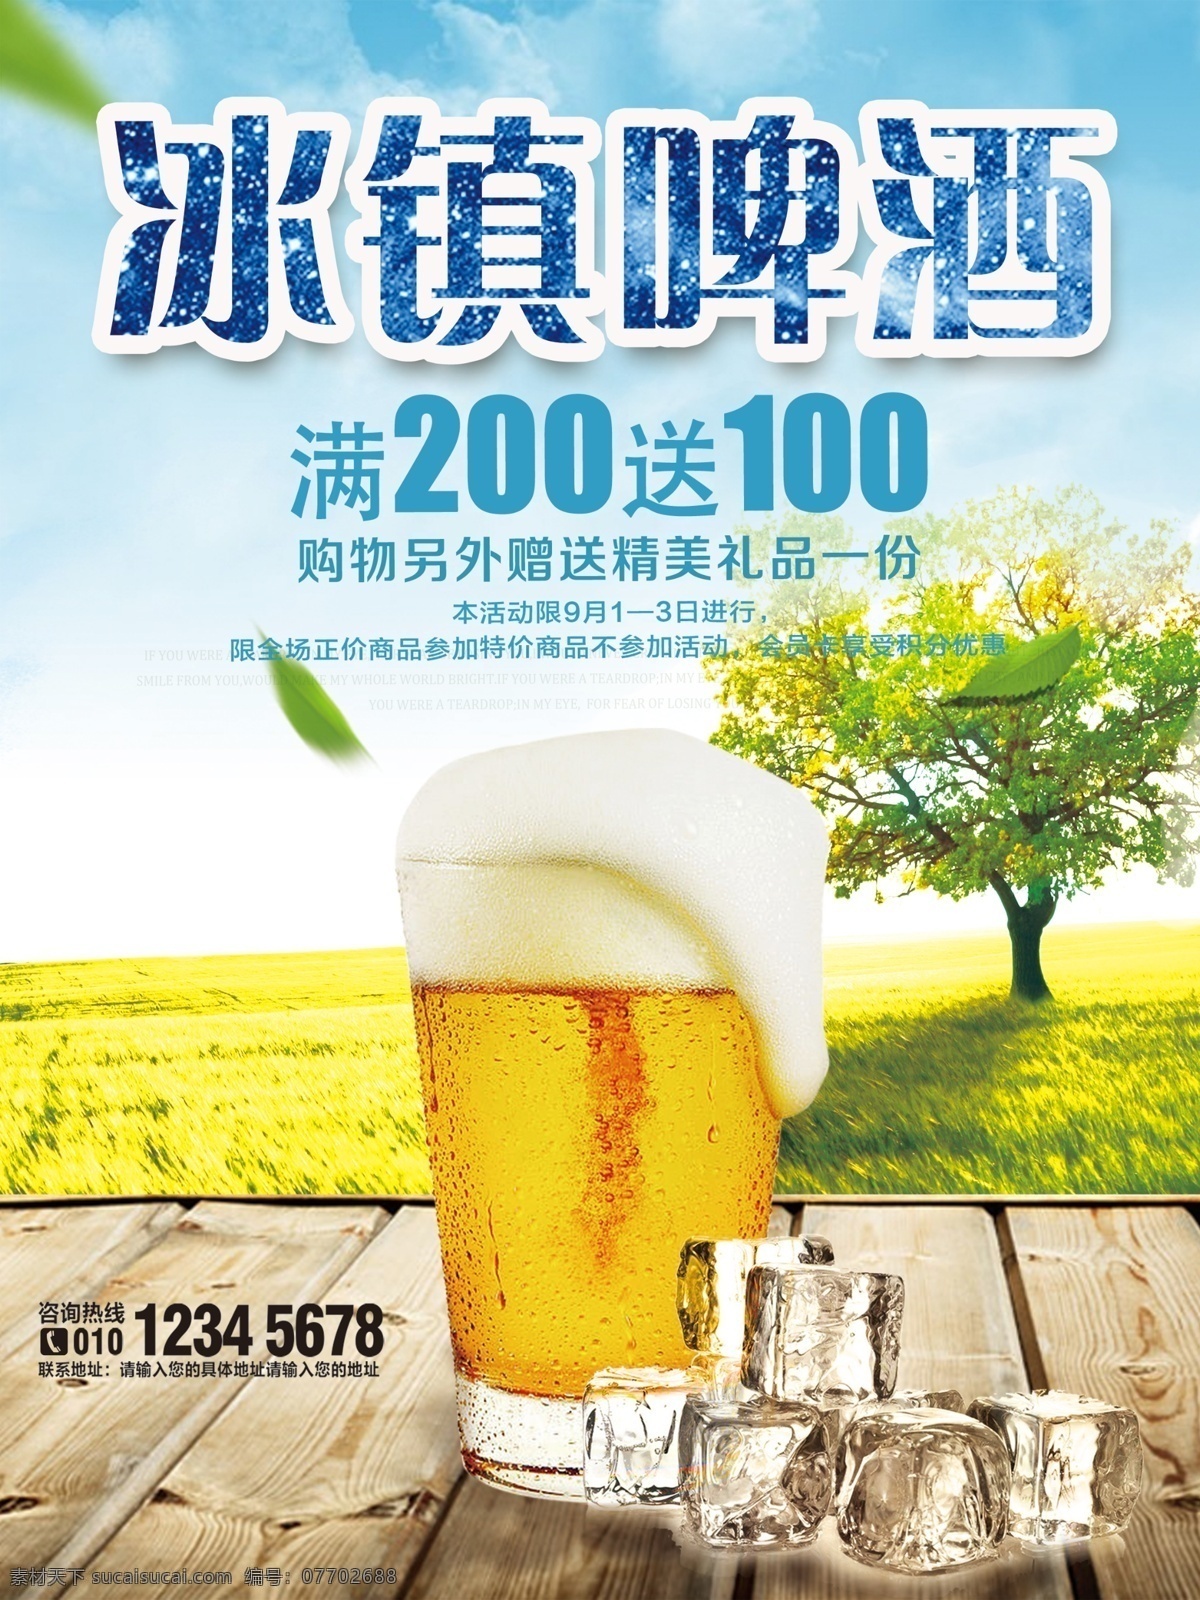 夏季 冰块 冰镇 啤酒 海报 酒吧海报 啤酒促销海报 模板 展板 花苞 花蕾 小麦 啤酒图标